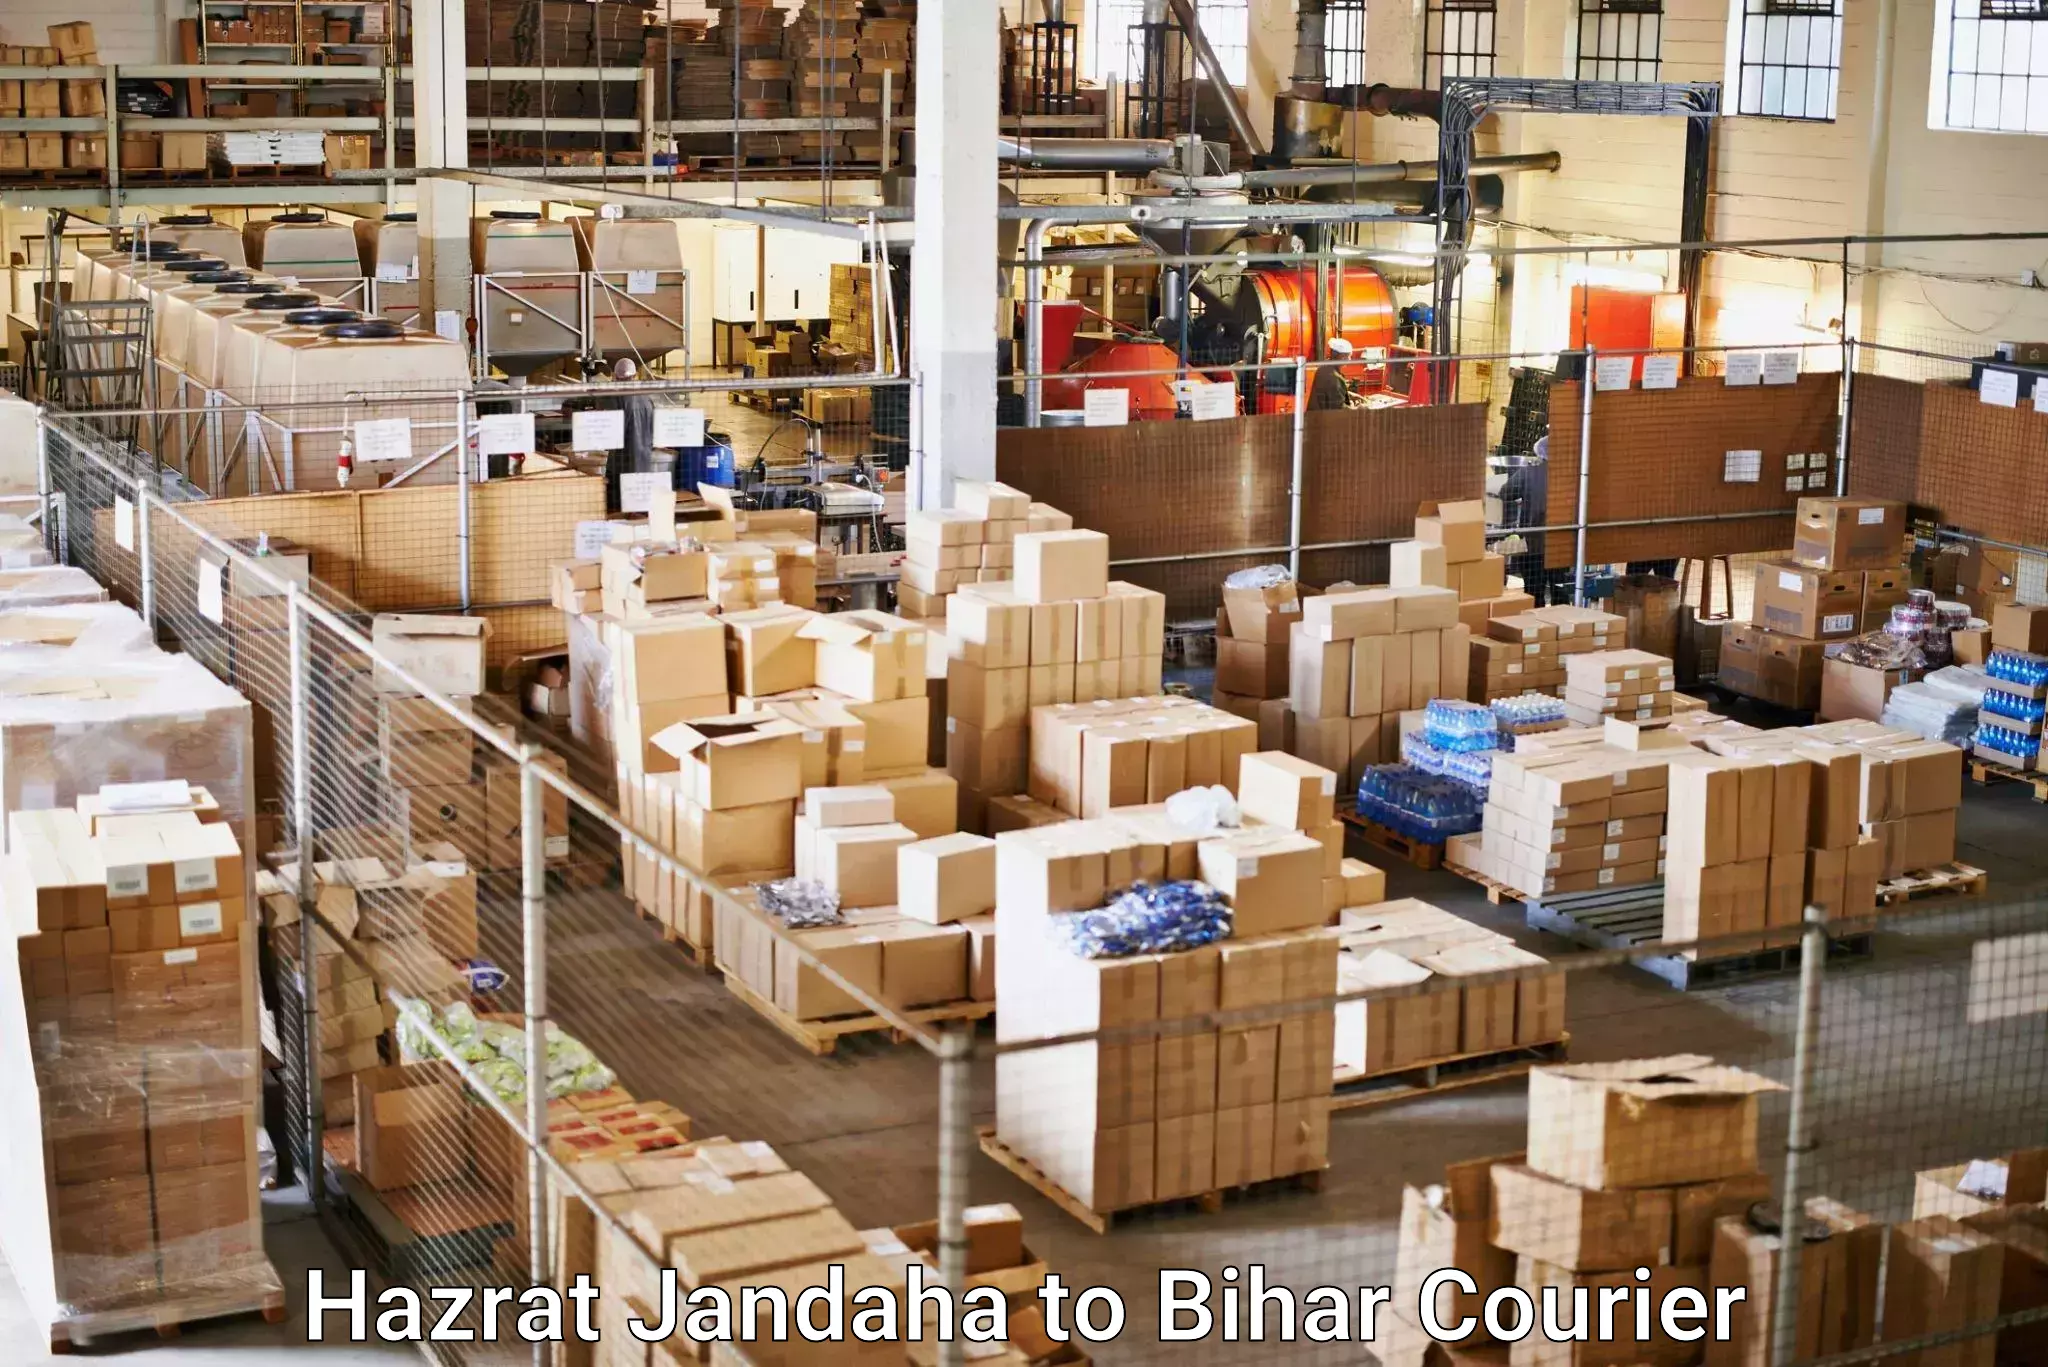 Sustainable delivery practices Hazrat Jandaha to Hazrat Jandaha